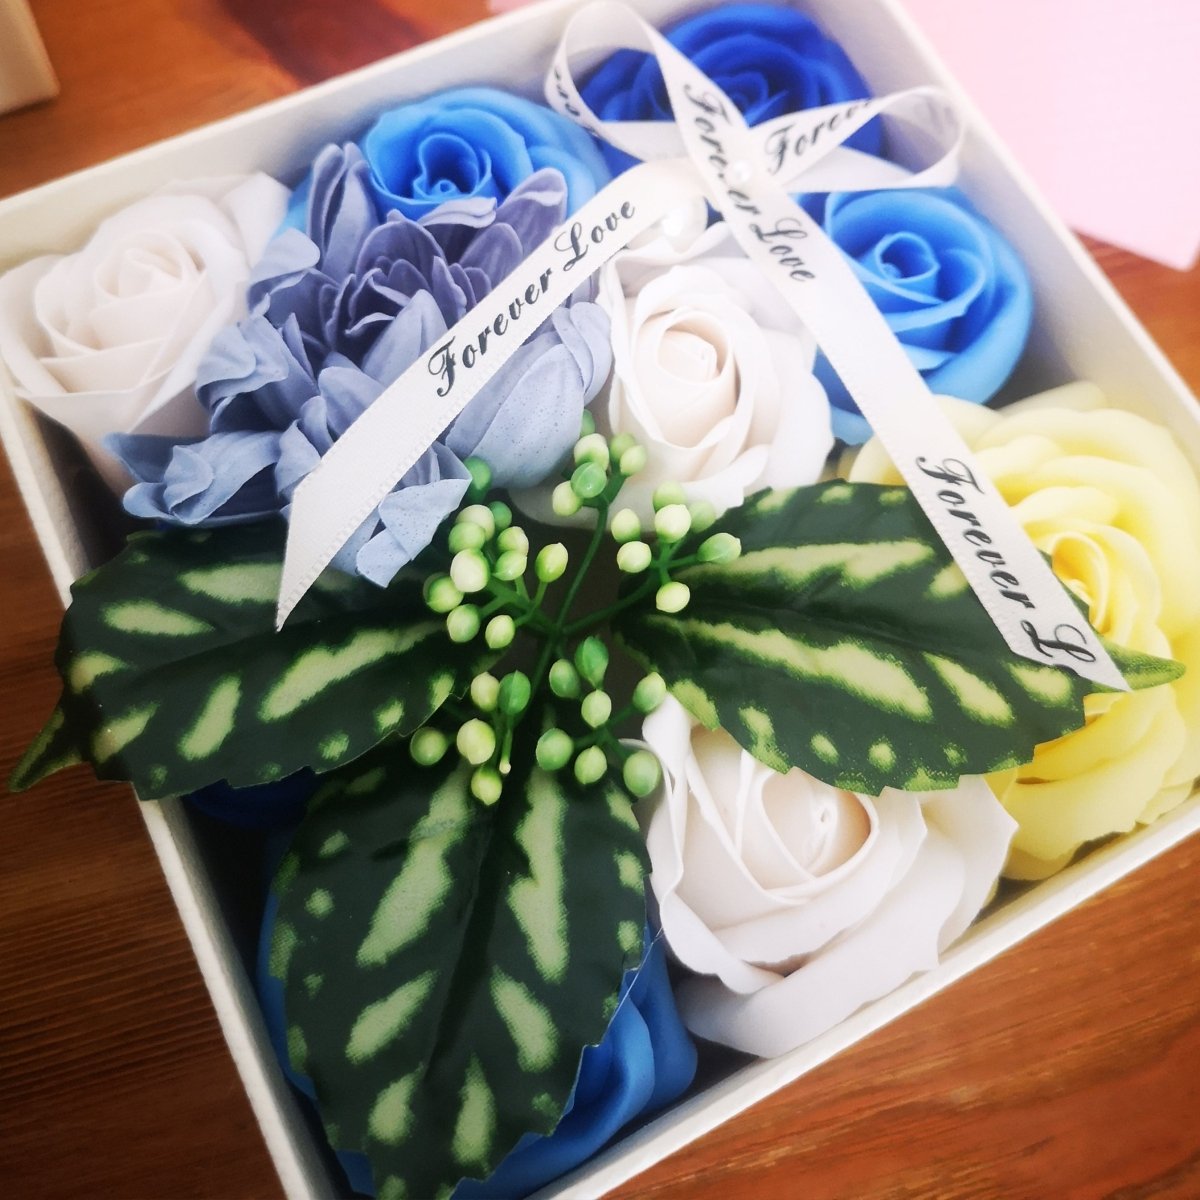 Azul - Flores eternas en caja a domicilio - Regalos originales personalizados - DE MOI À TOI |DMAT